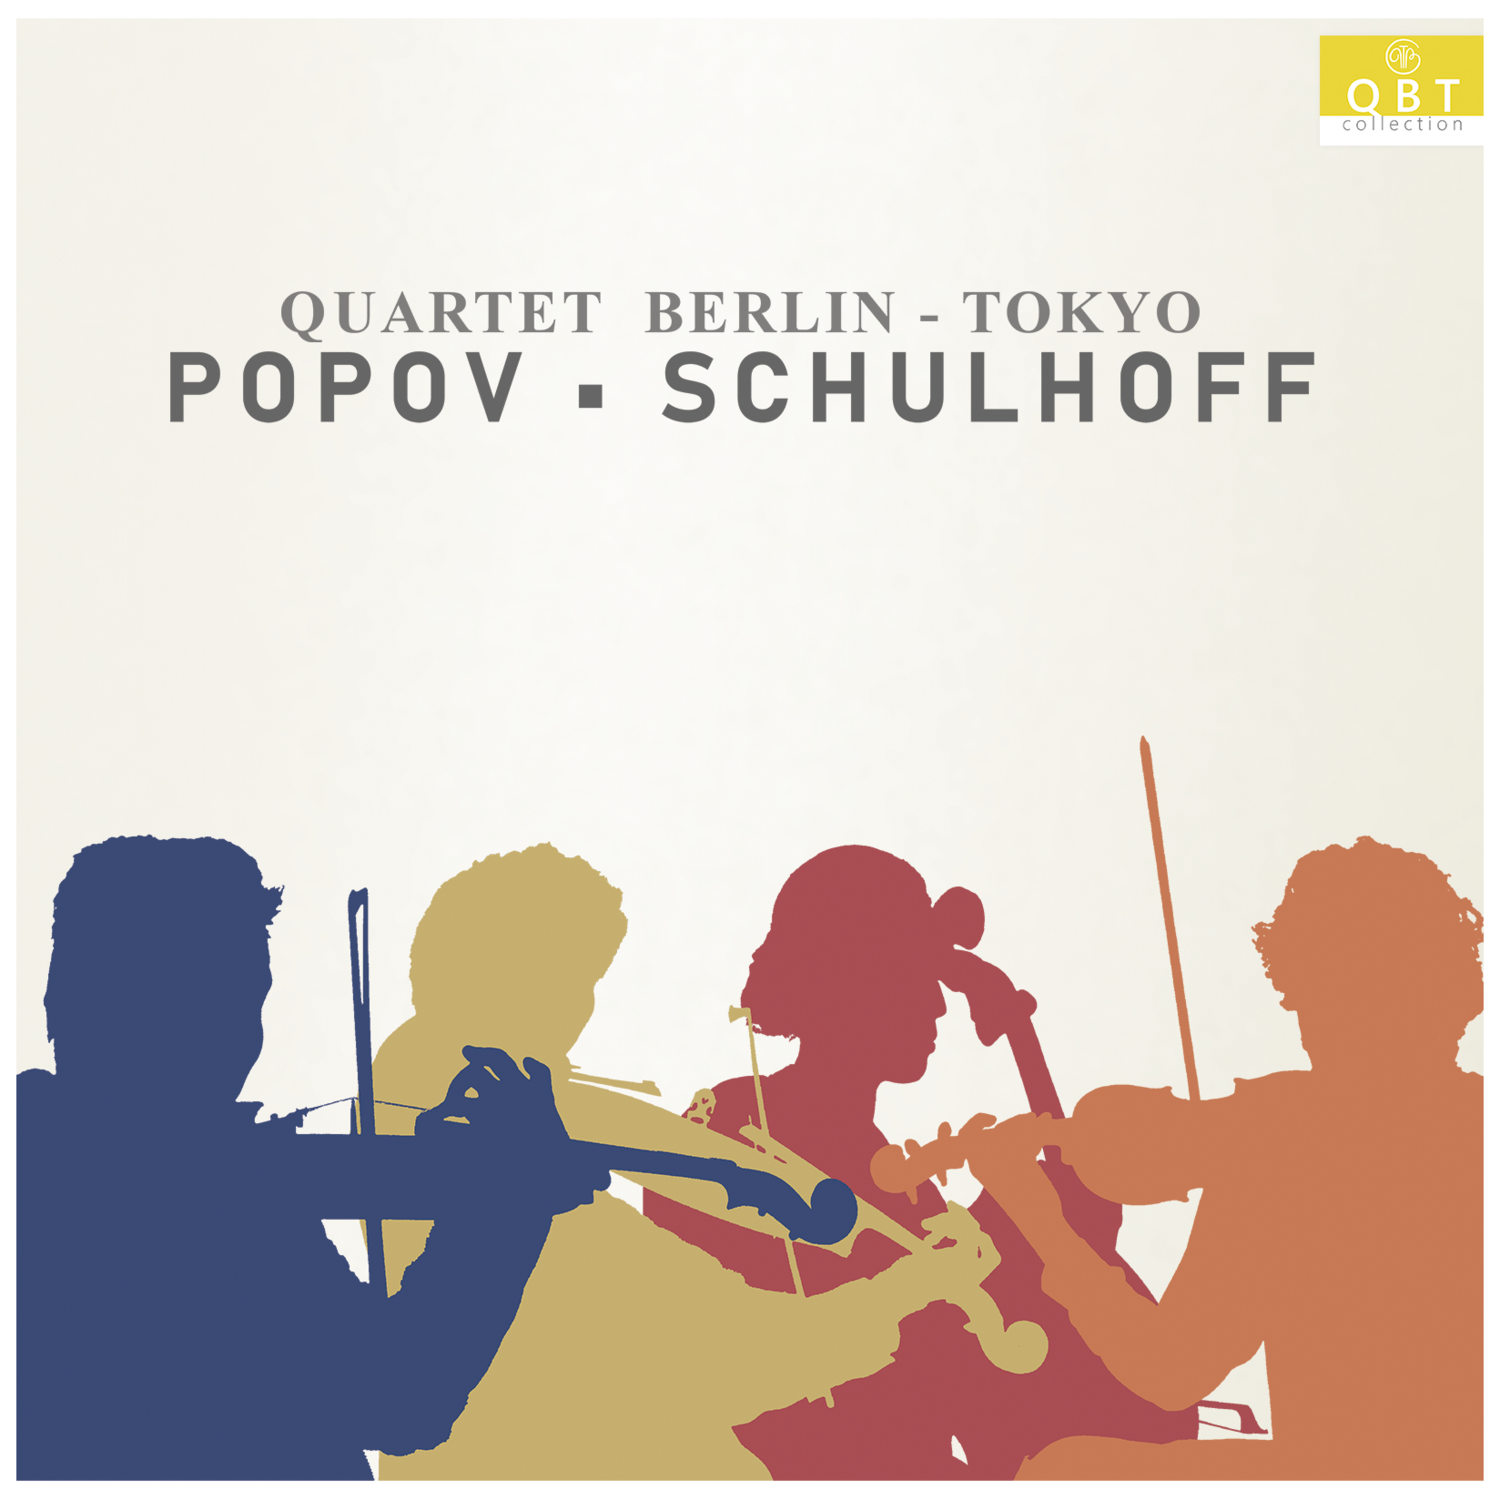 Quartet Berlin-Tokyo                                                                              


Popov·Schulhoff